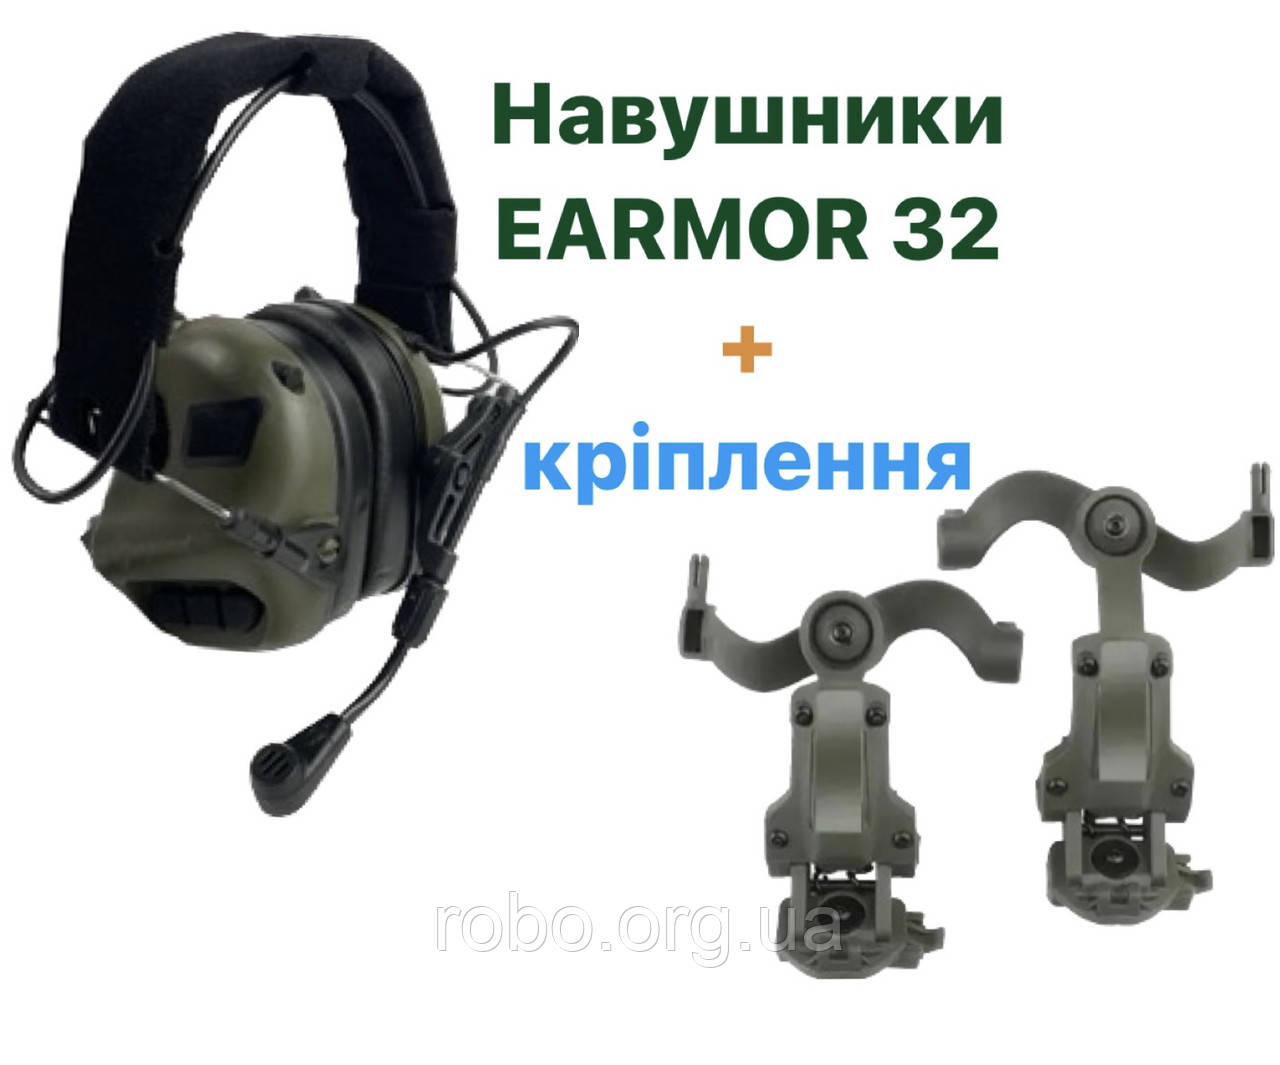 Активні навушники військові Earmor M32 mod3 + кріплення Чебурашка